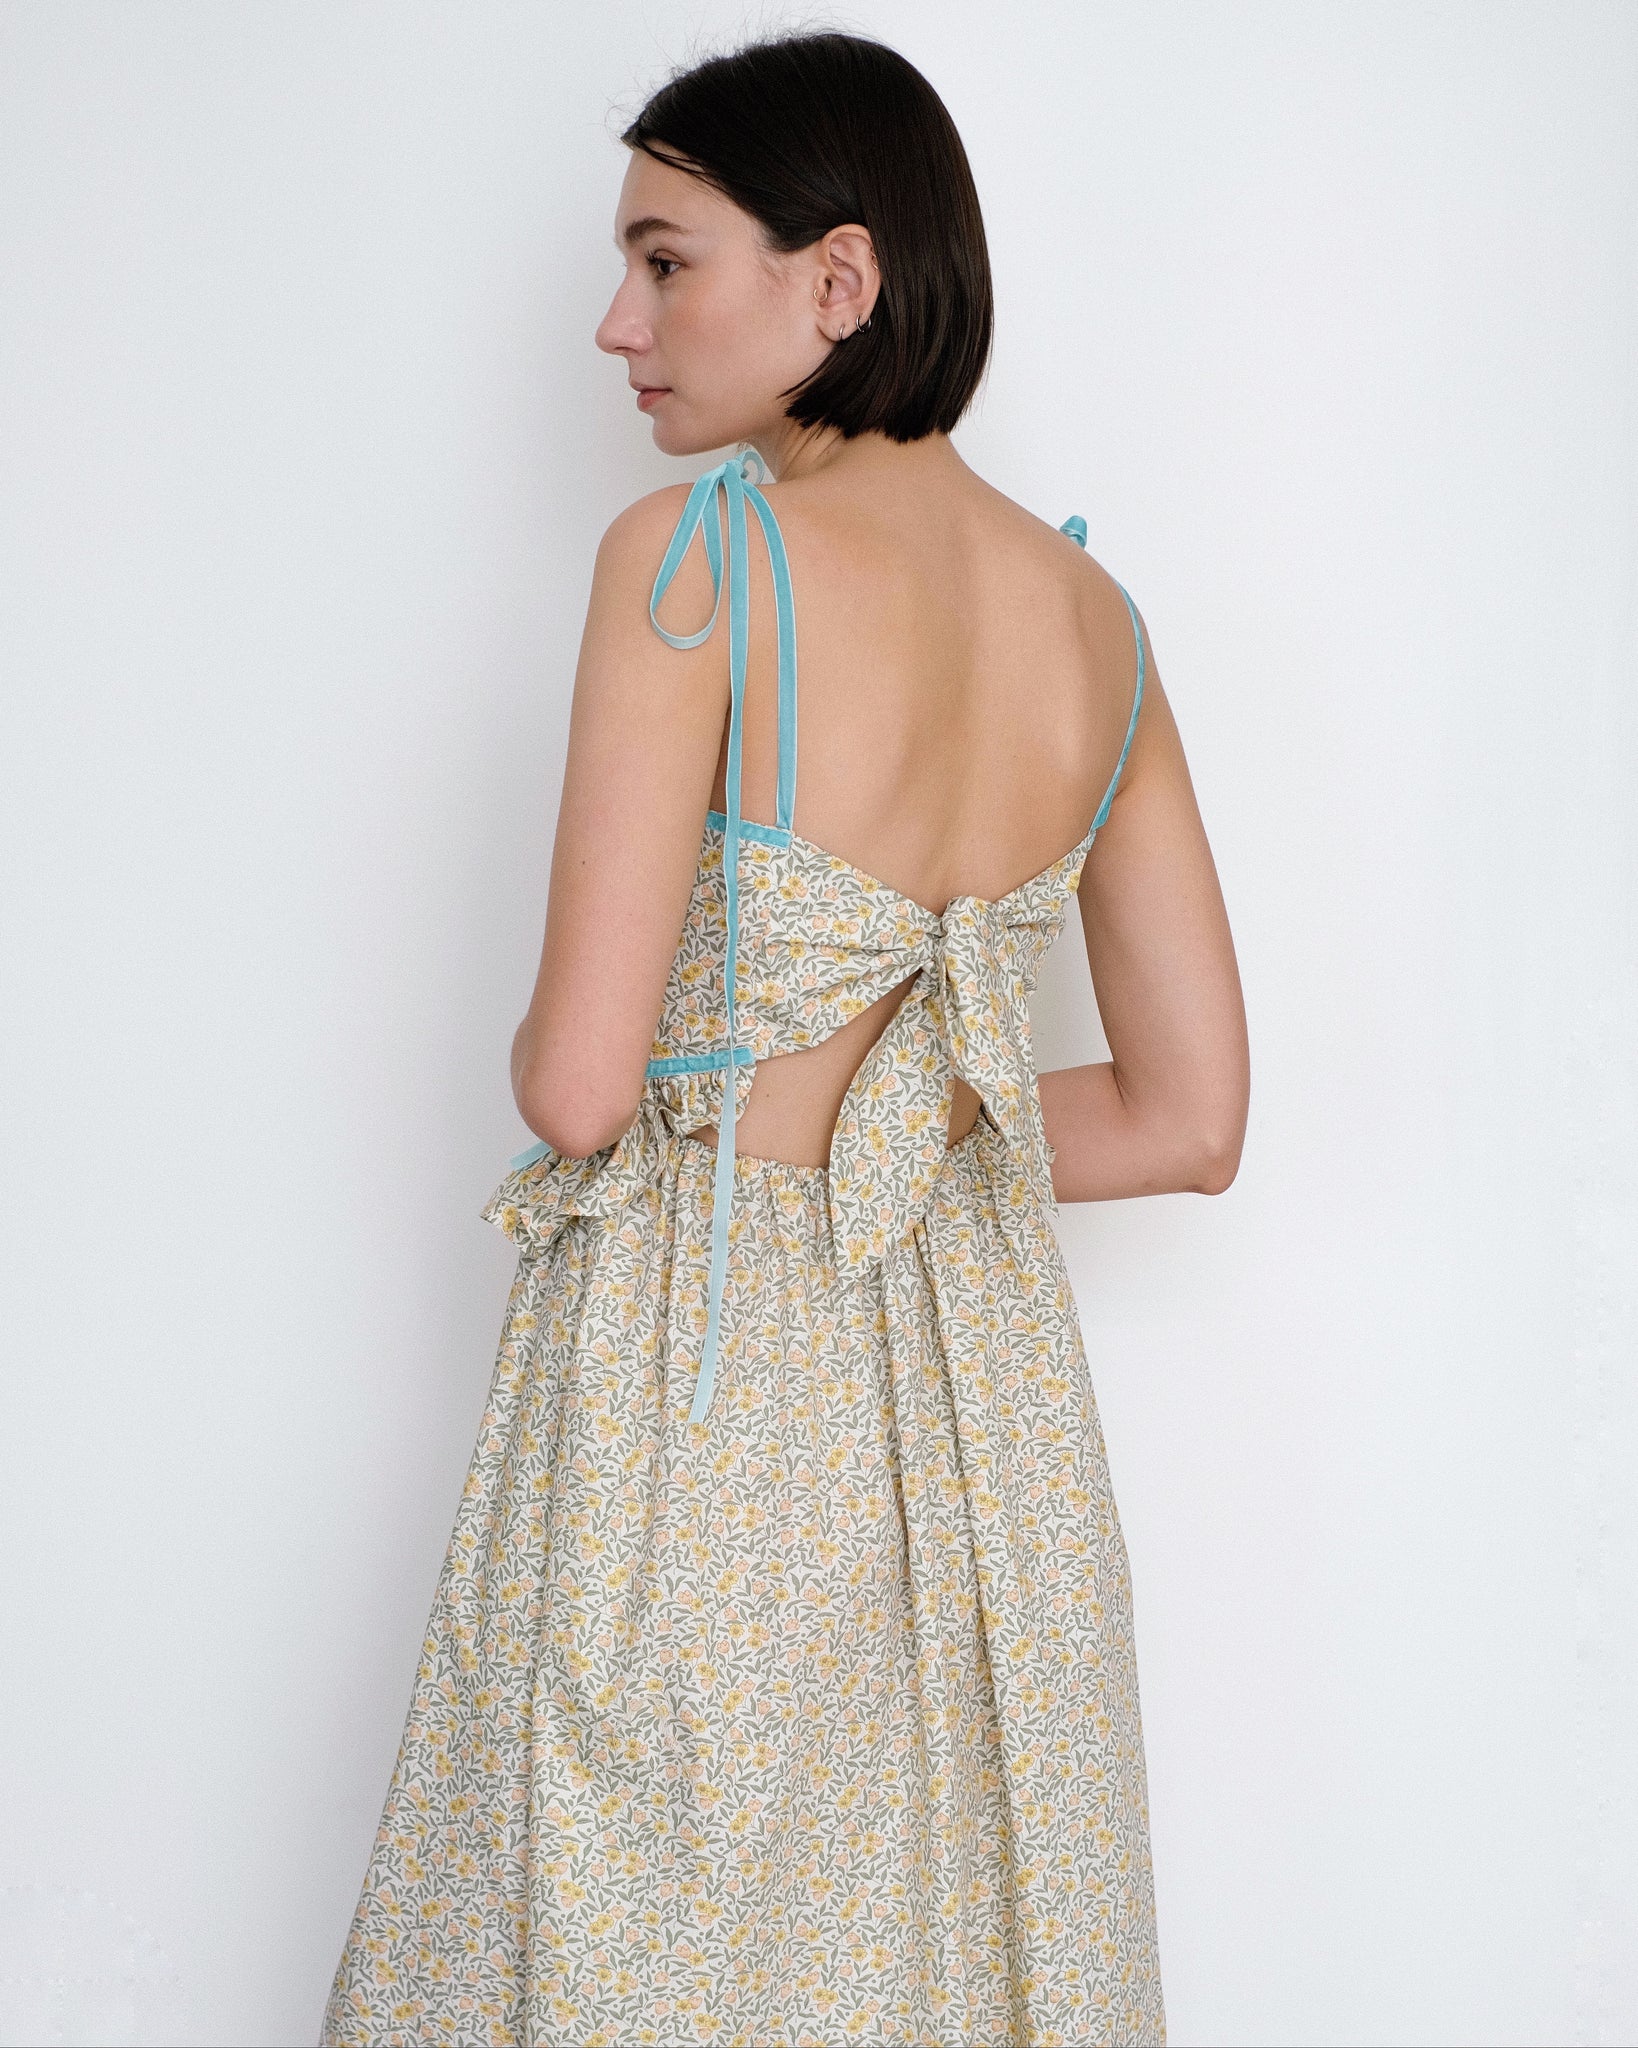 Eliza Faulkner Tessa floral print dress with velvet ribbons